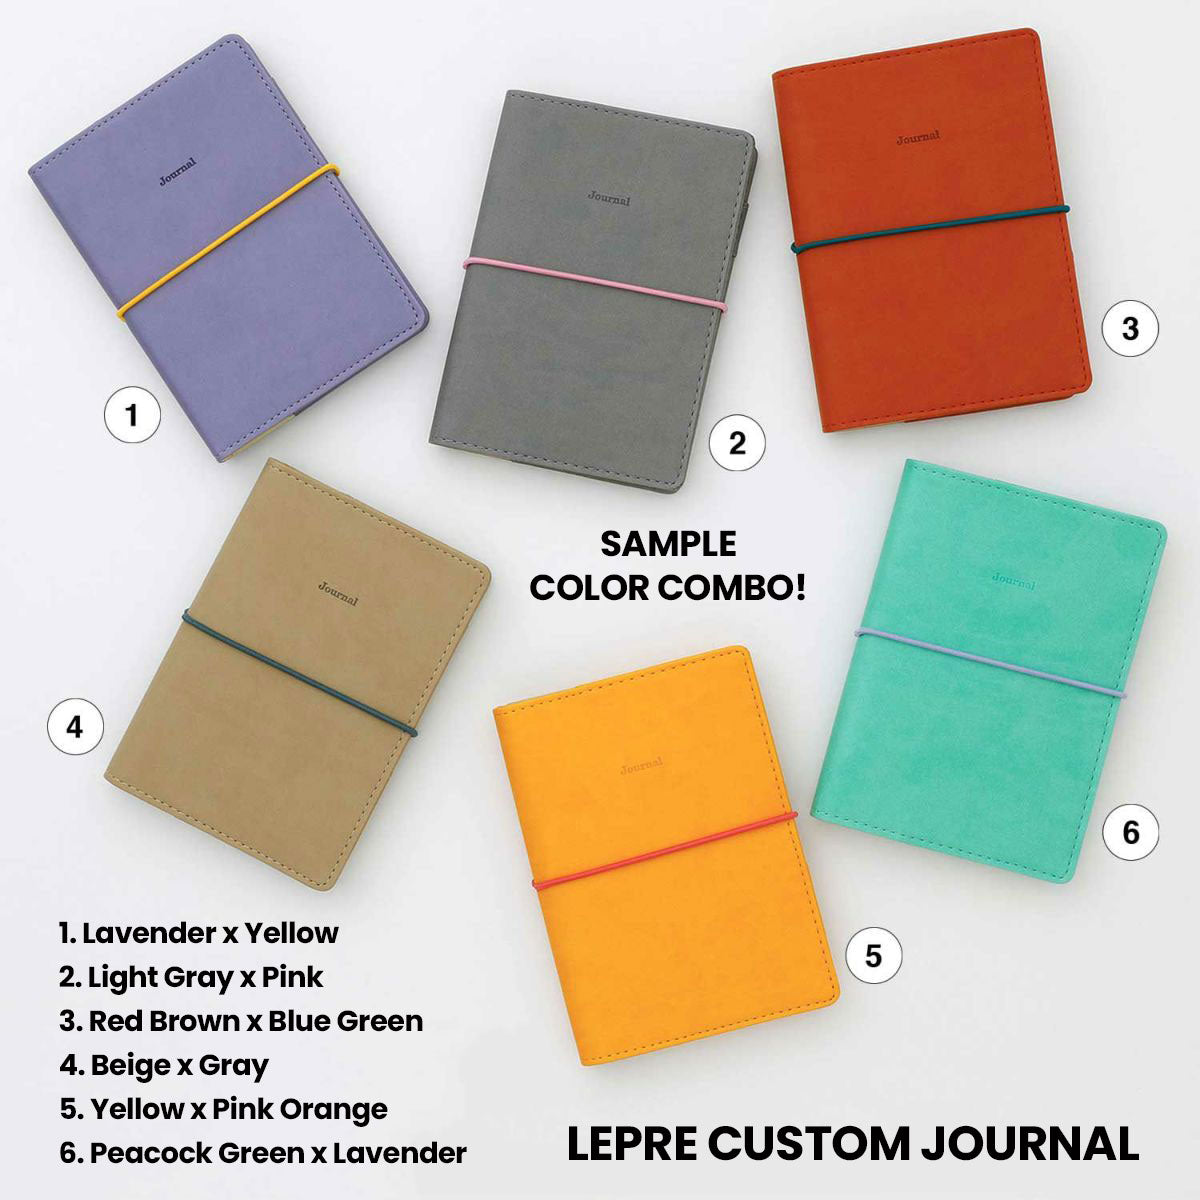 Lepre Custom Journal / Rubber Band